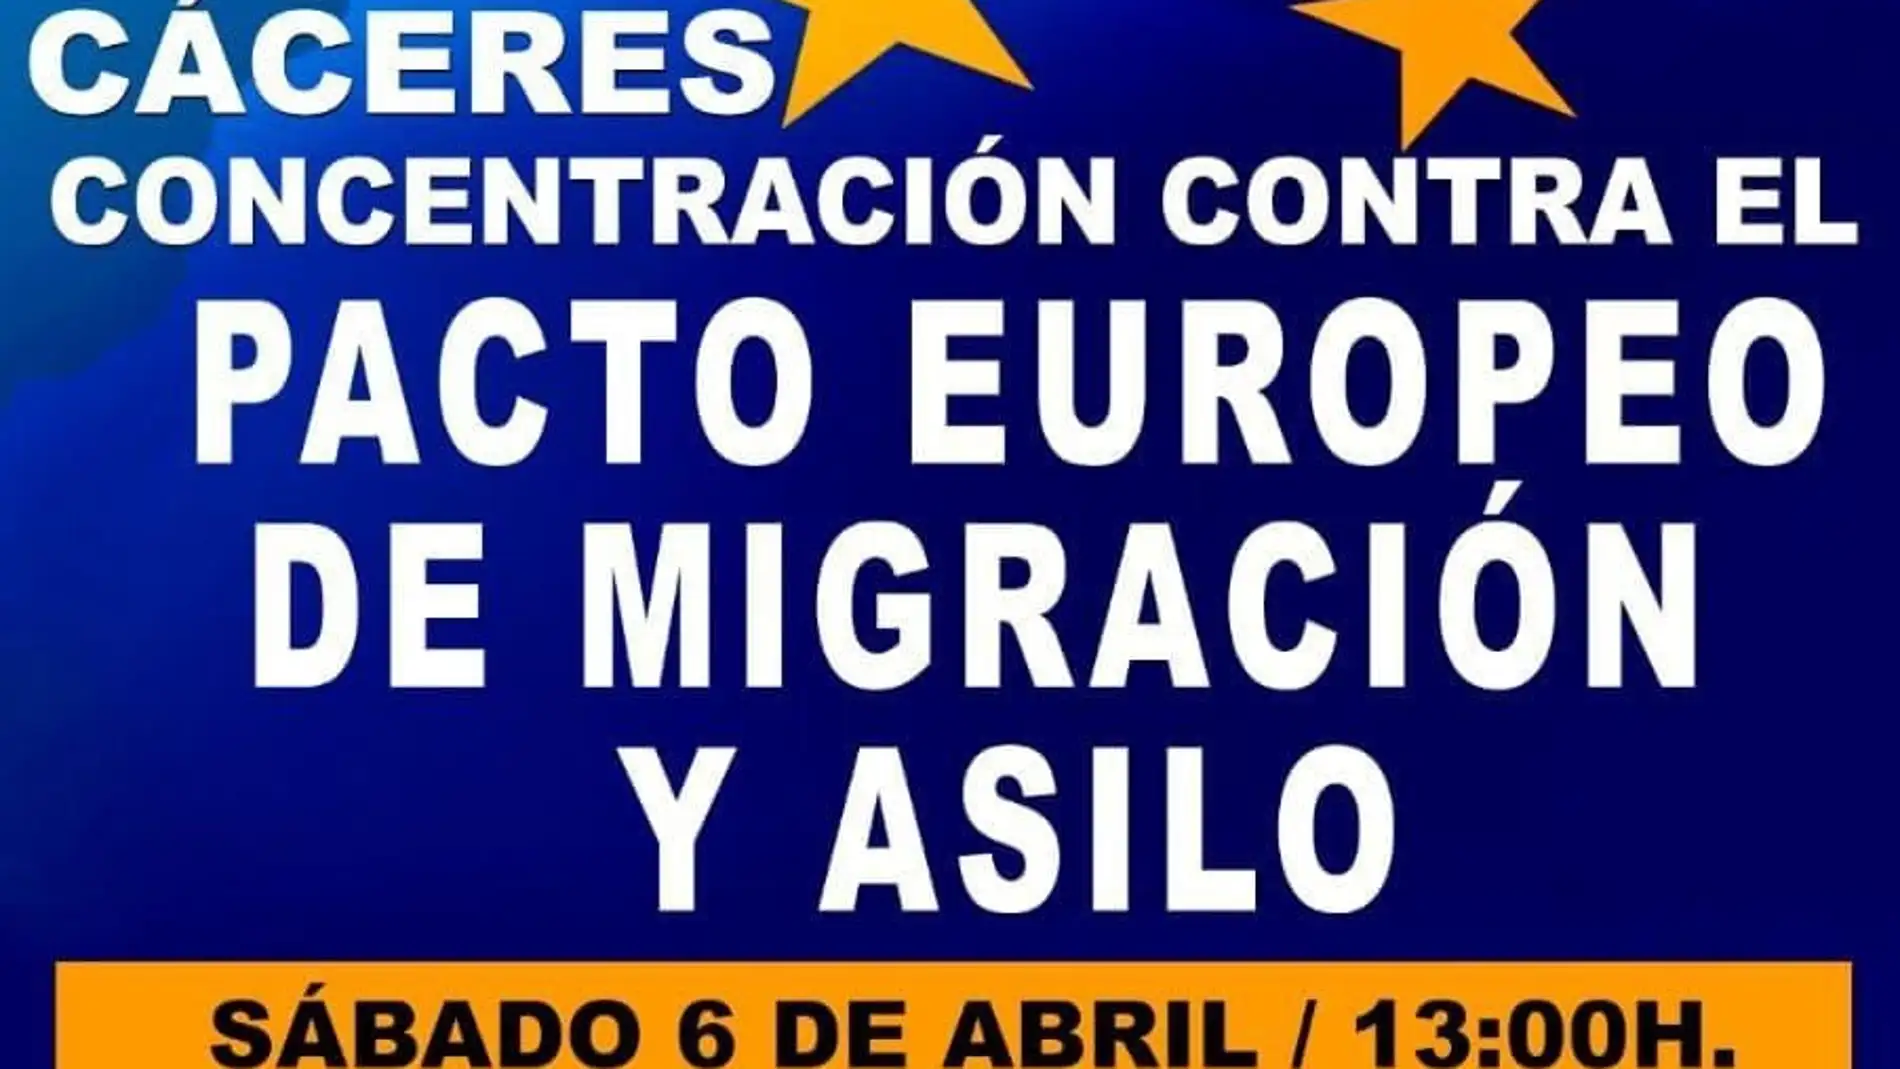 Badajoz, Cáceres y Mérida acogen este sábado concentraciones contra el Pacto Europeo de Migración y Asilo